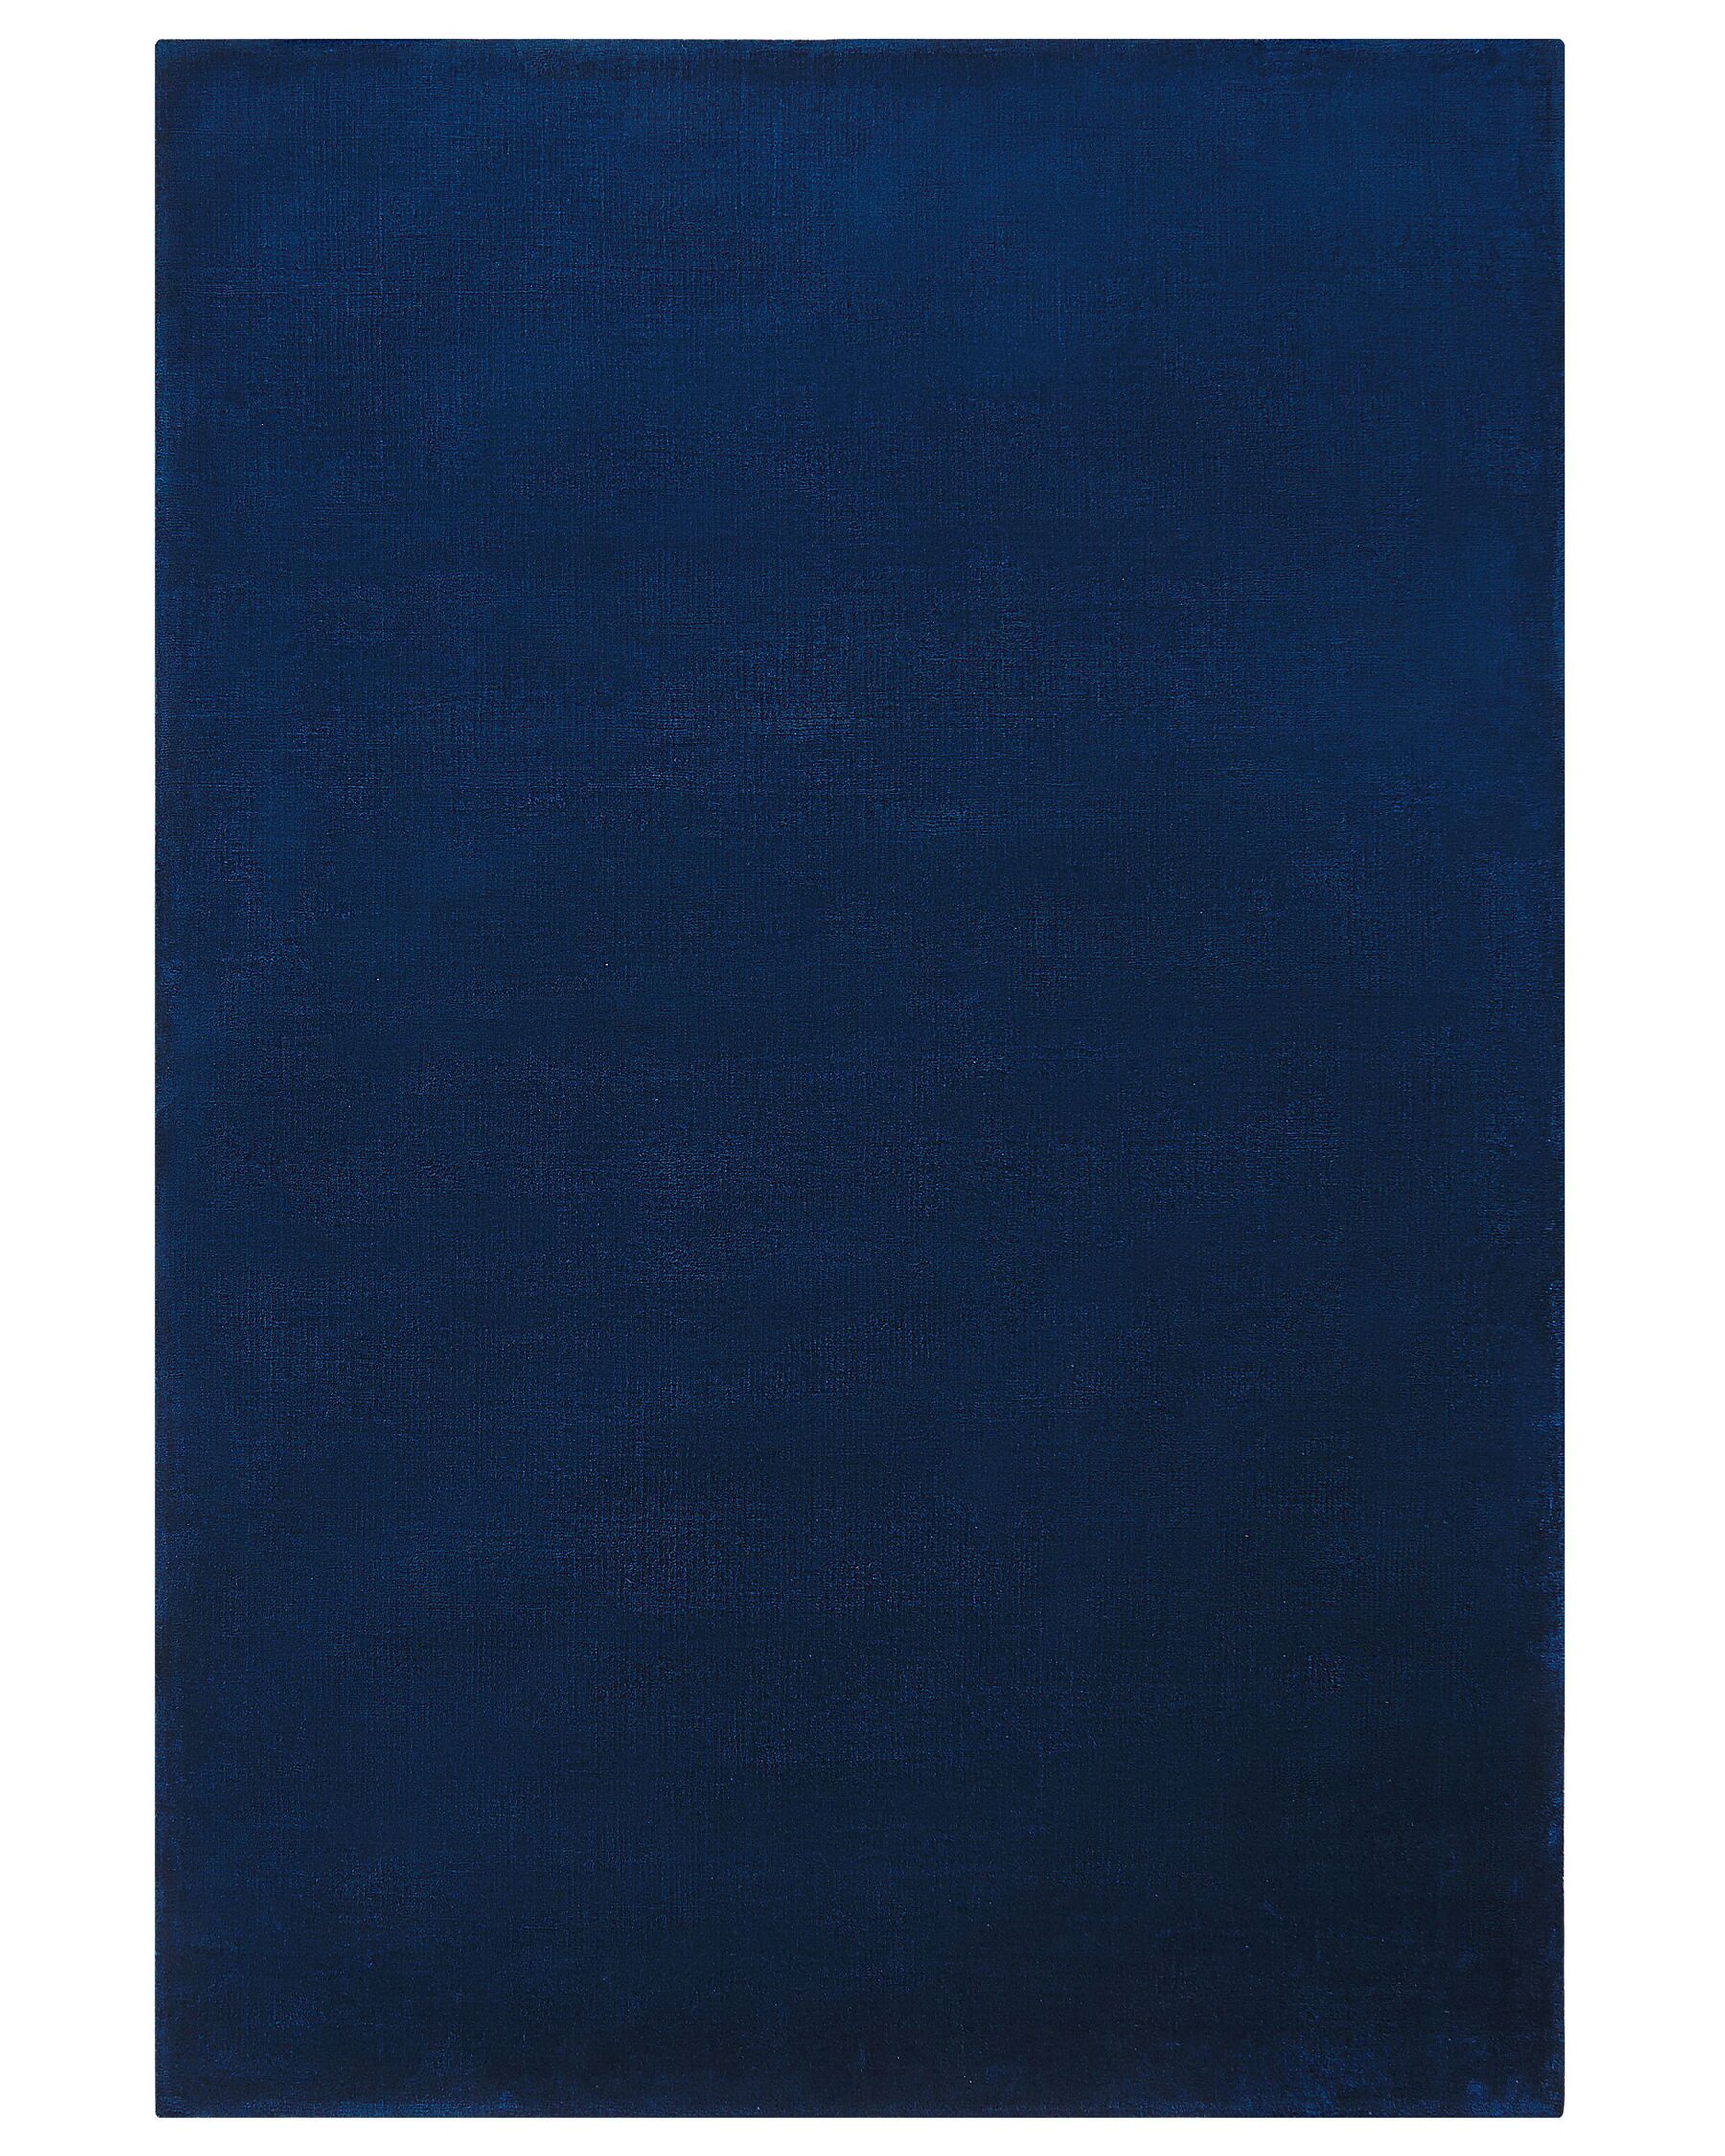 Tapis en viscose bleu marine 160 x 230 cm GESI II_793600